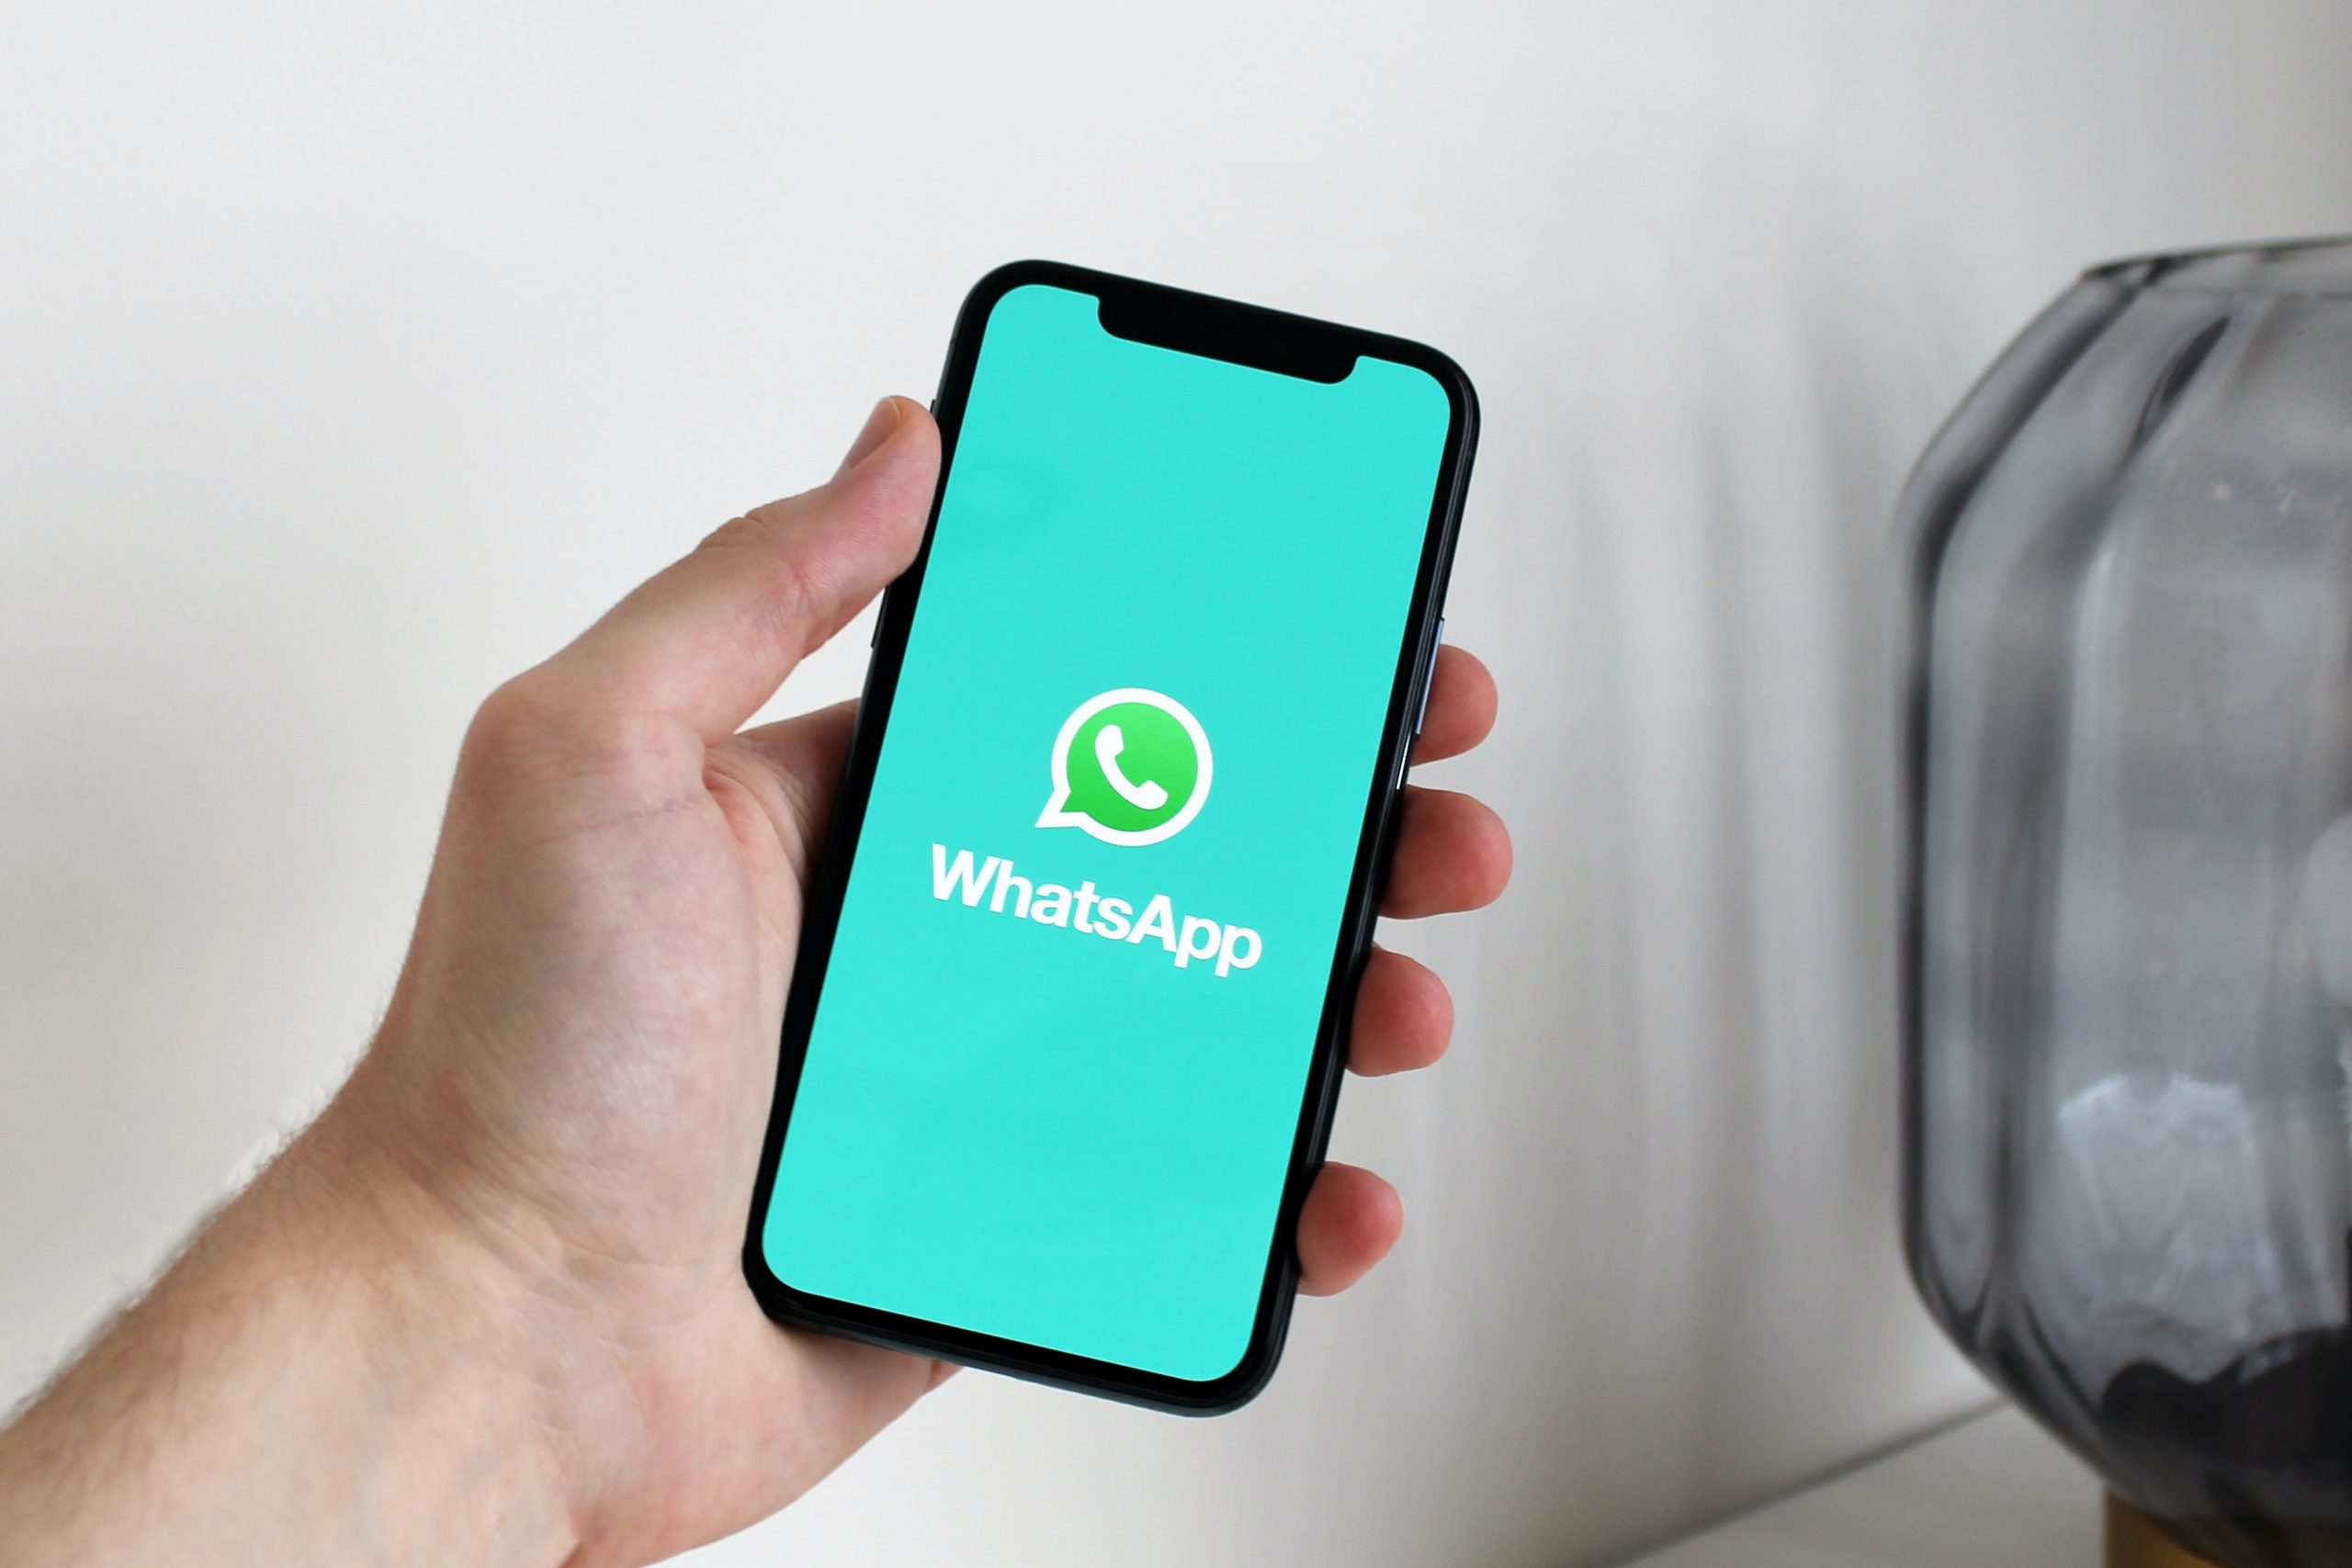 pexels anton 4132538 scaled - WhatsApp: entenda as novas políticas de privacidade do app